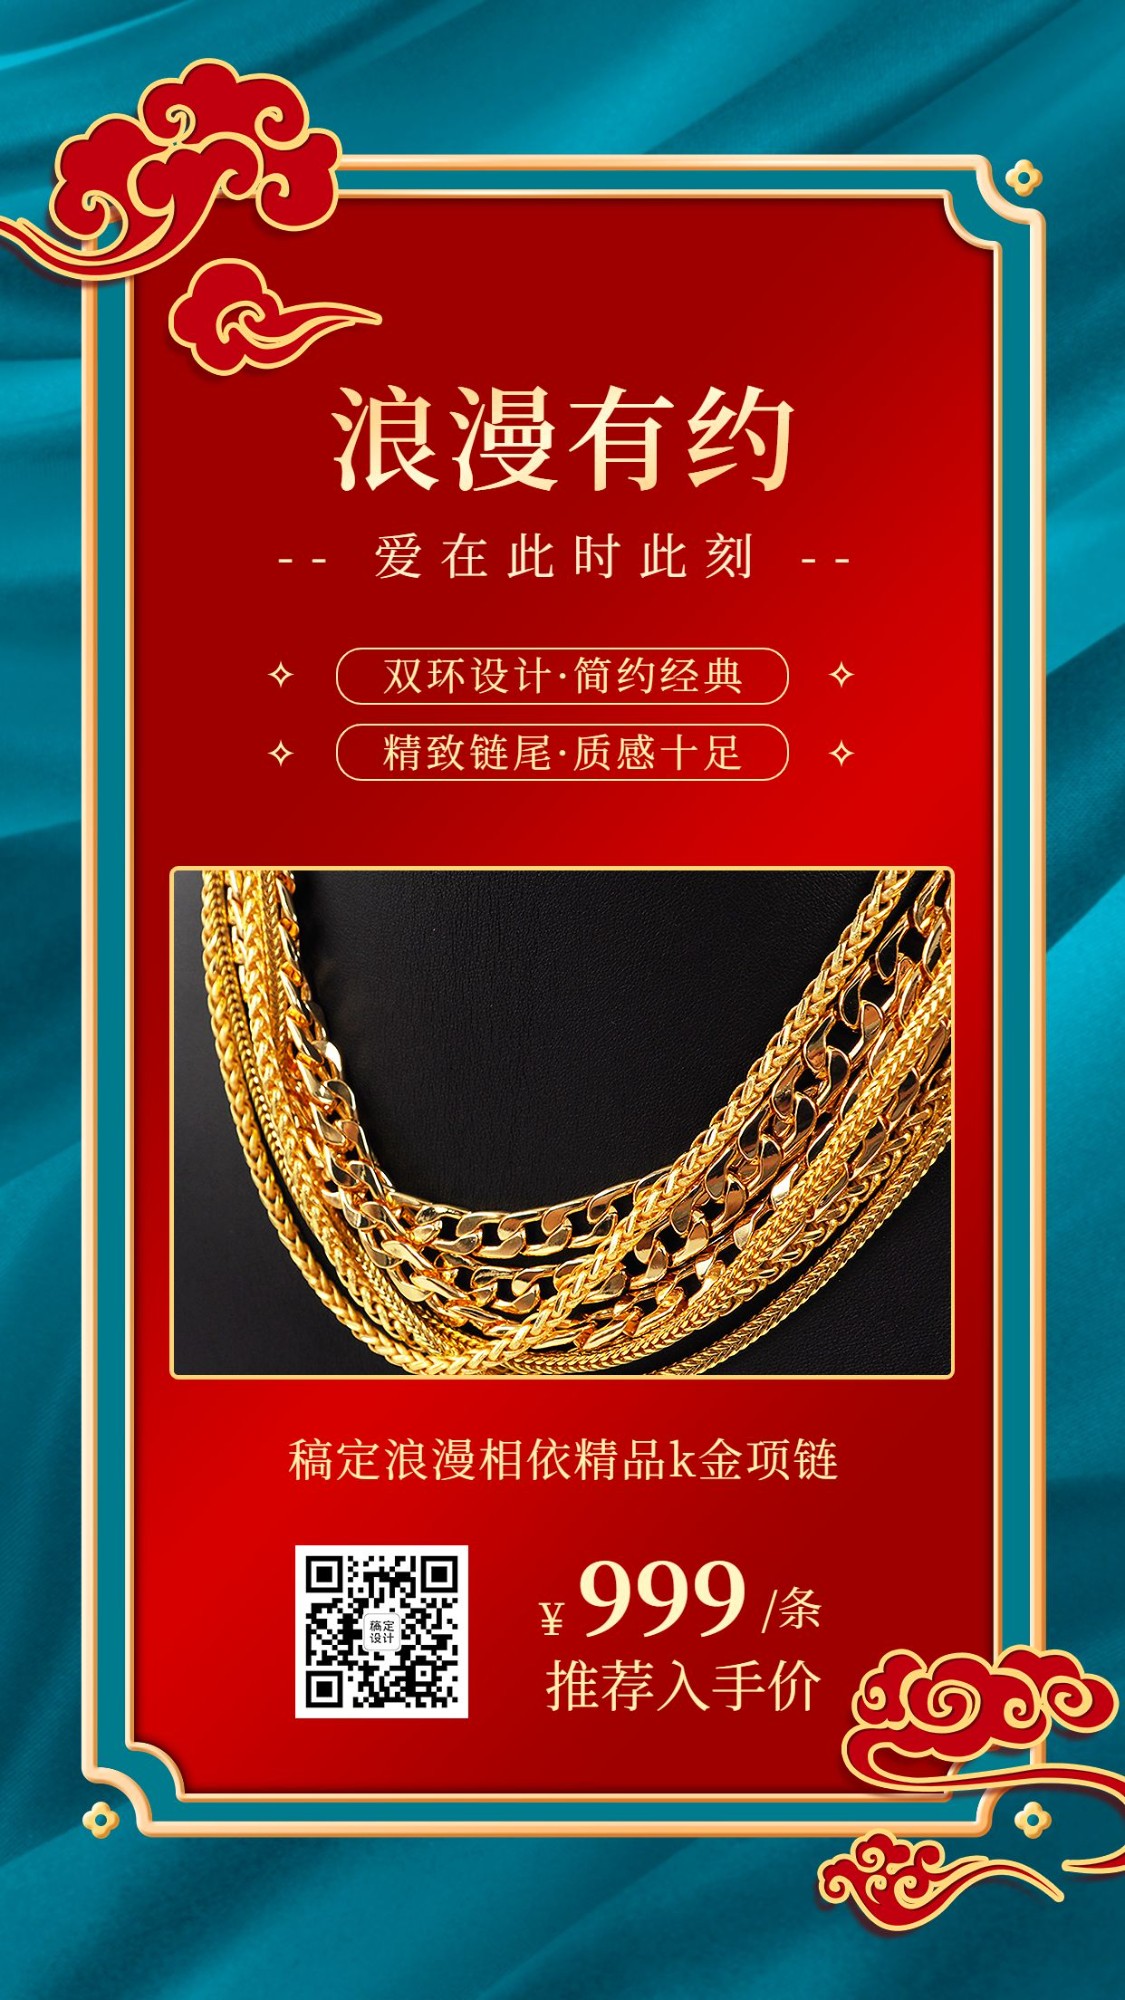 珠宝首饰项链产品展示营销手机海报预览效果